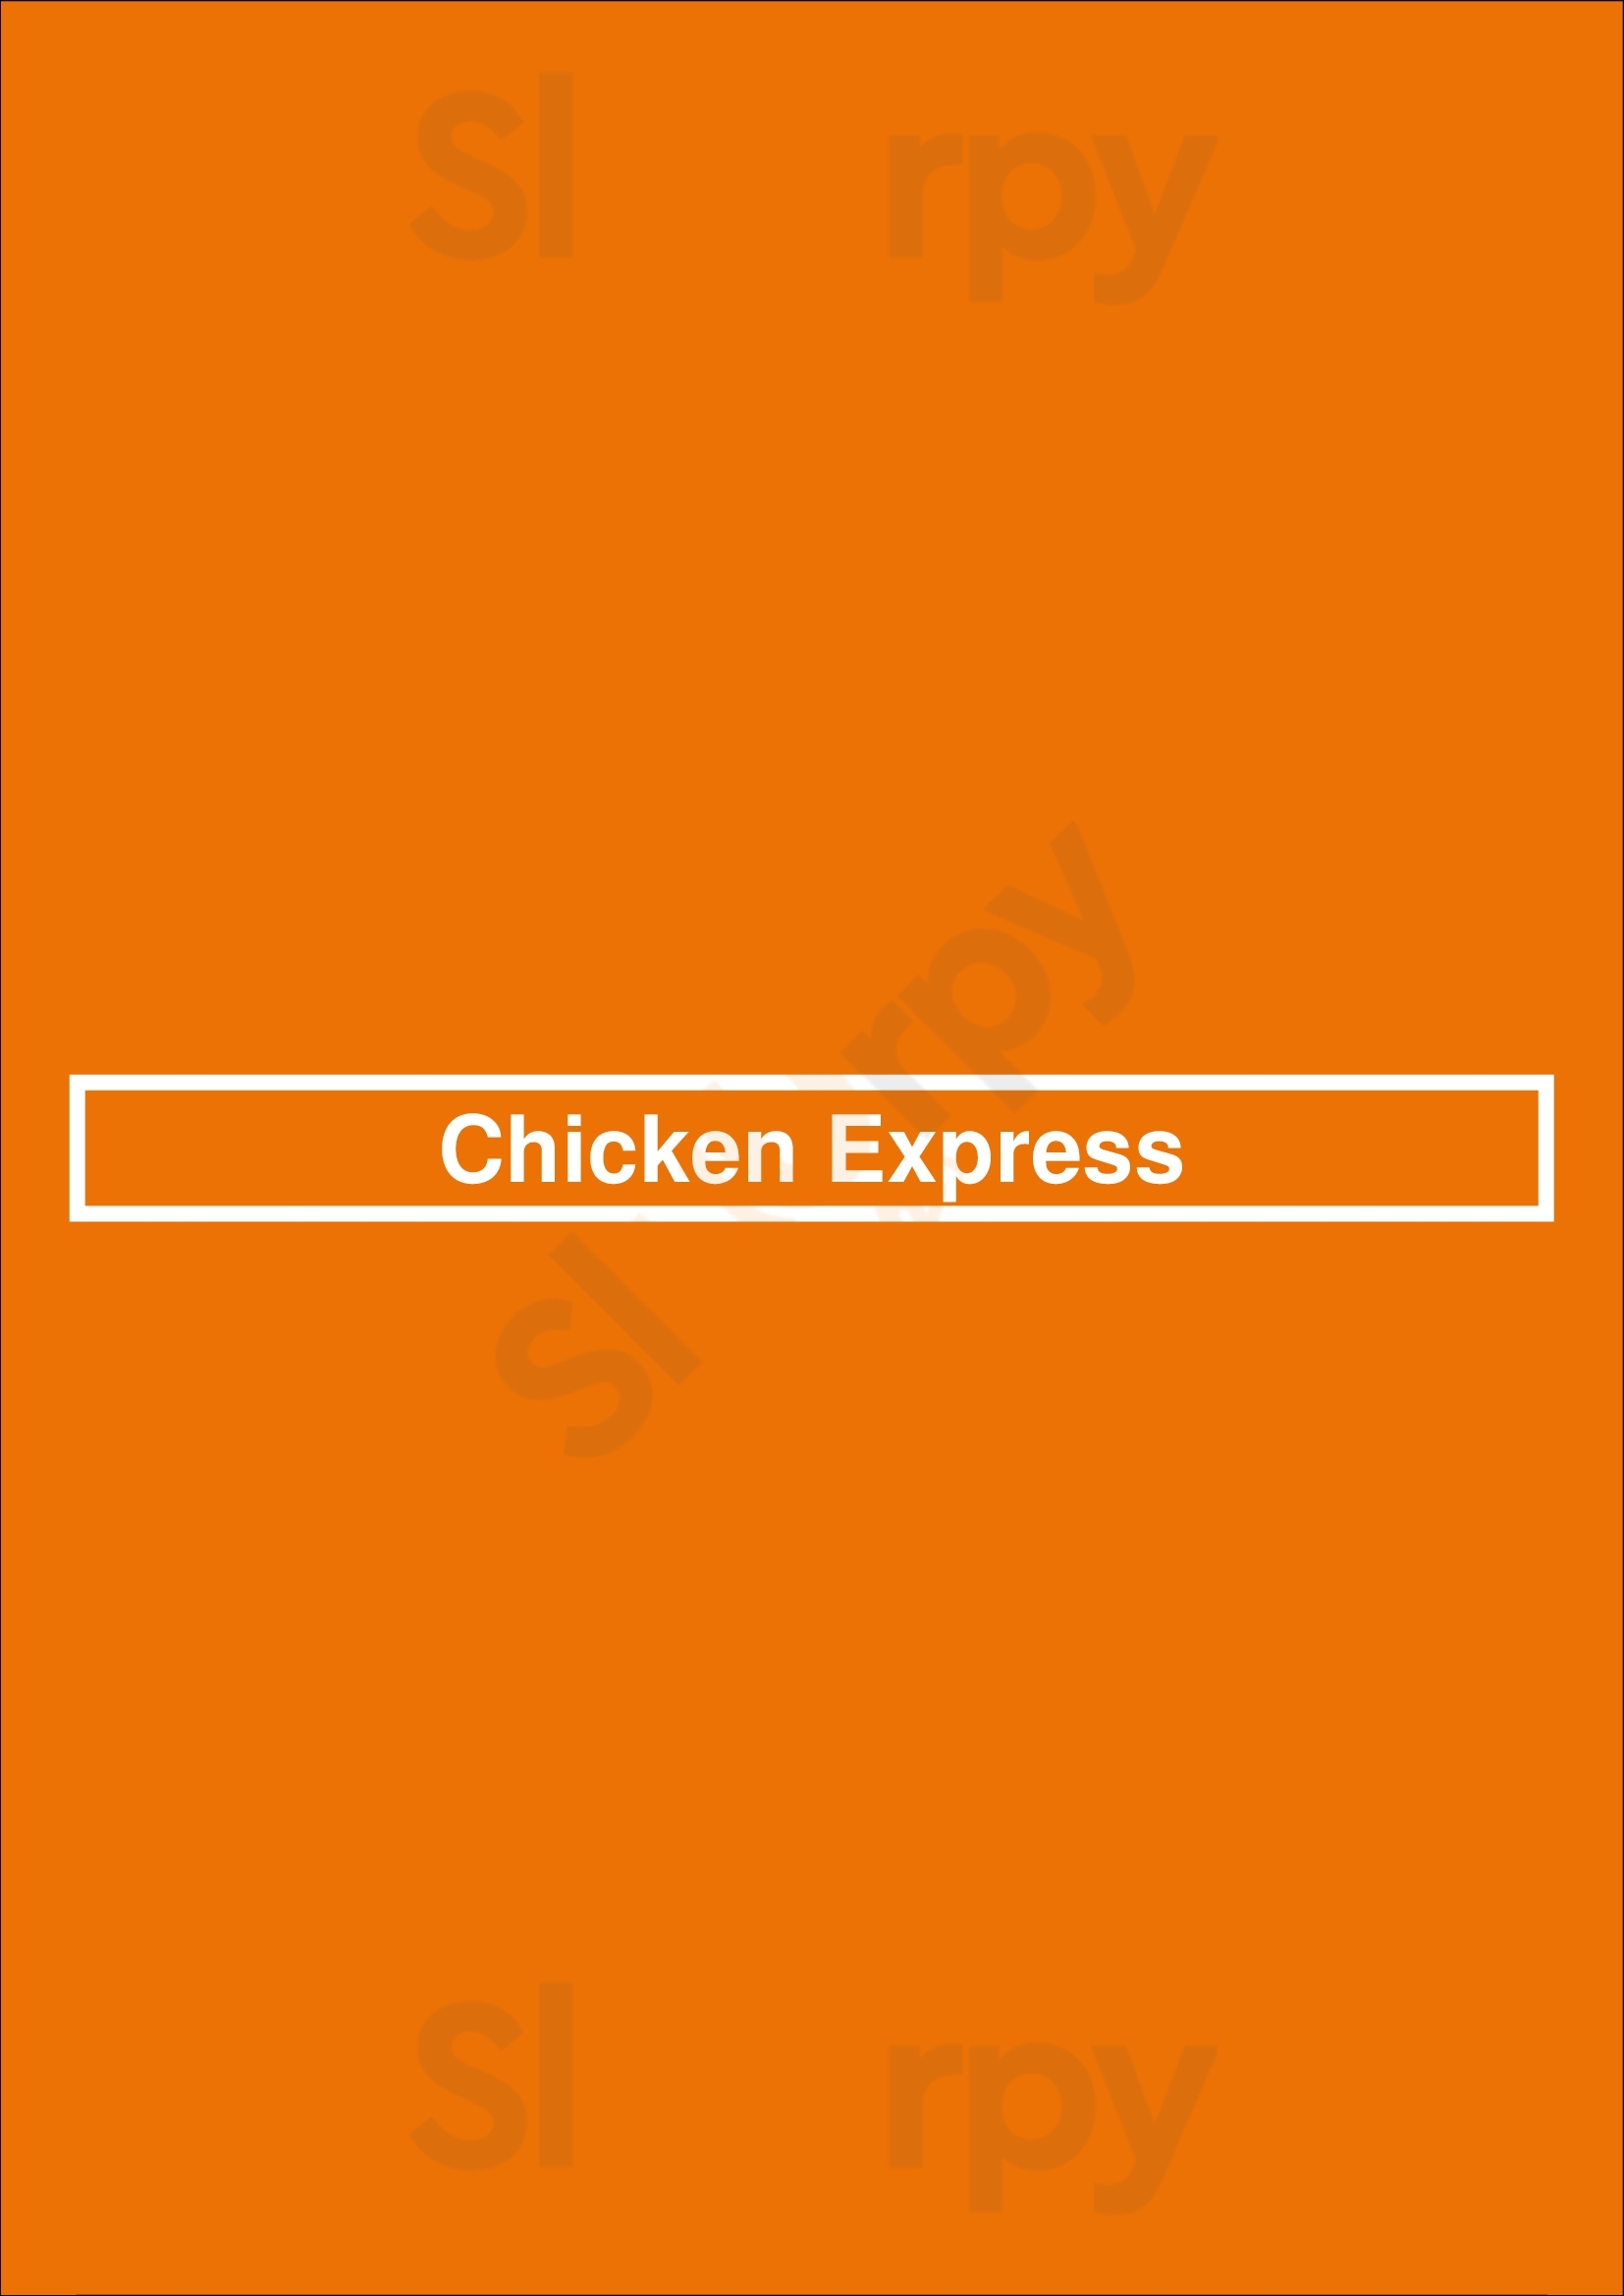 Chicken Express Bedford Menu - 1